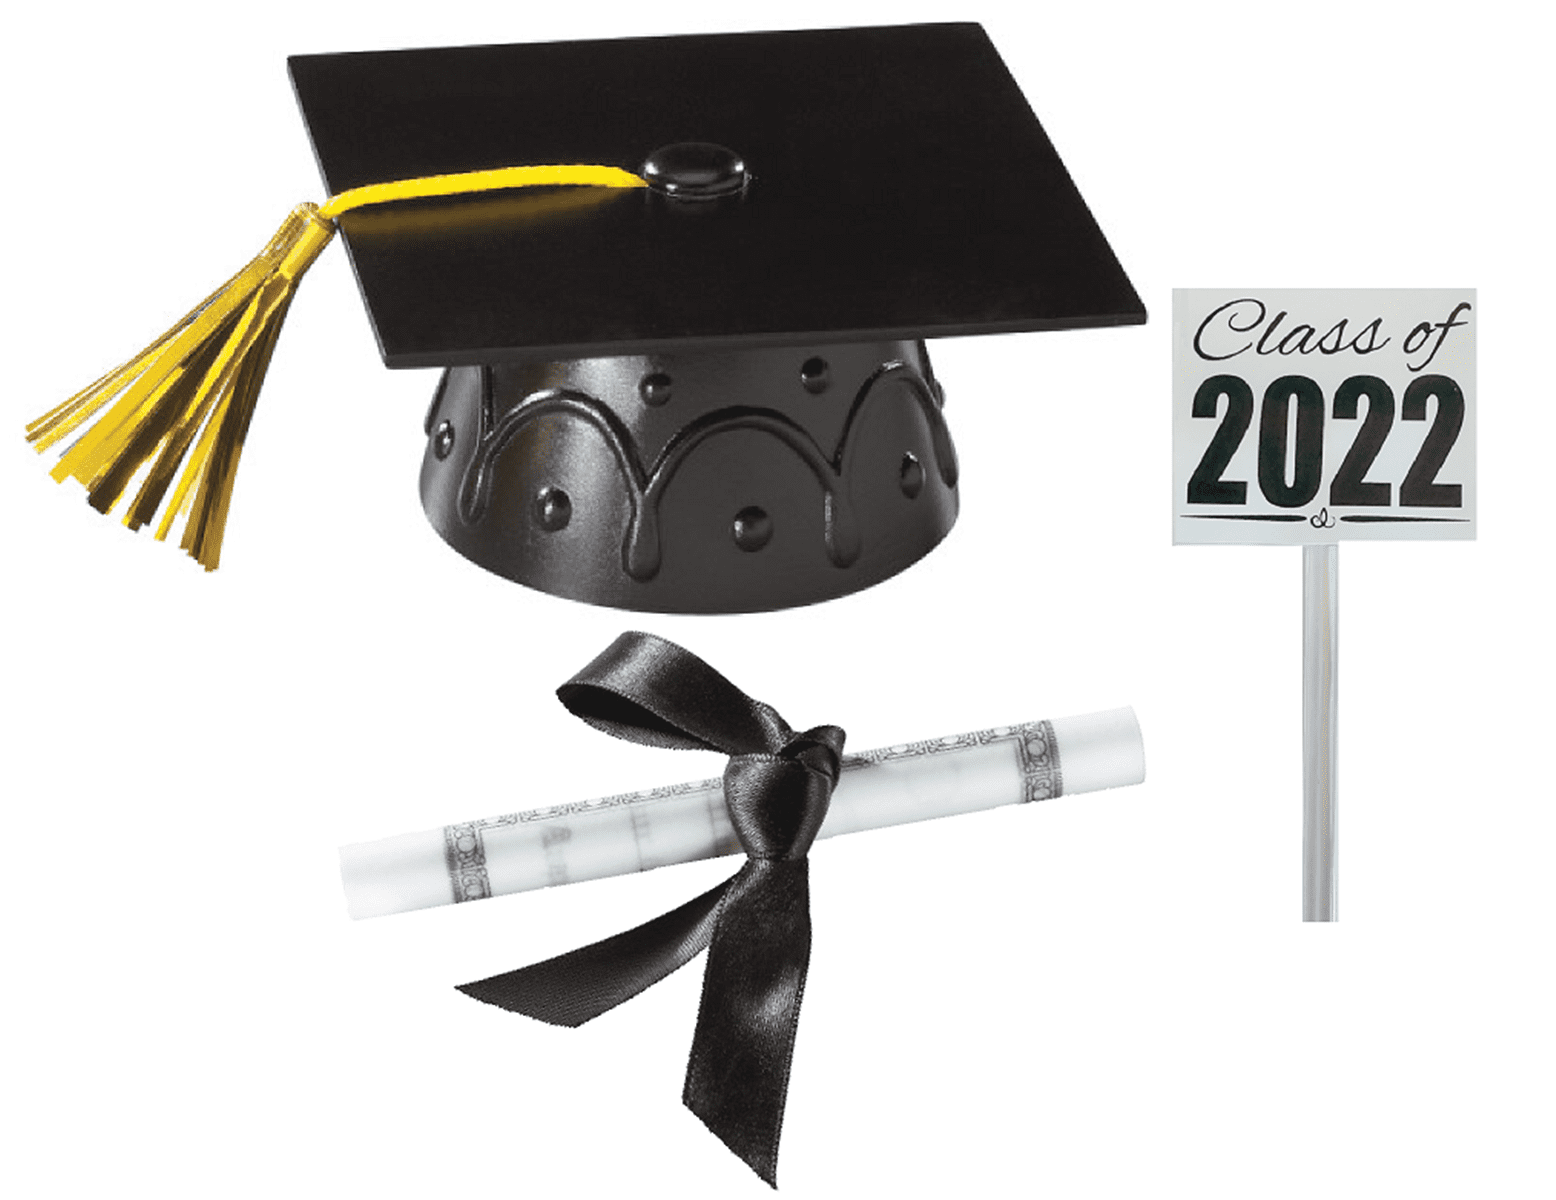 Black Graduation Cap Hat Pillow Shaped Candy Boxes for Graduation Party